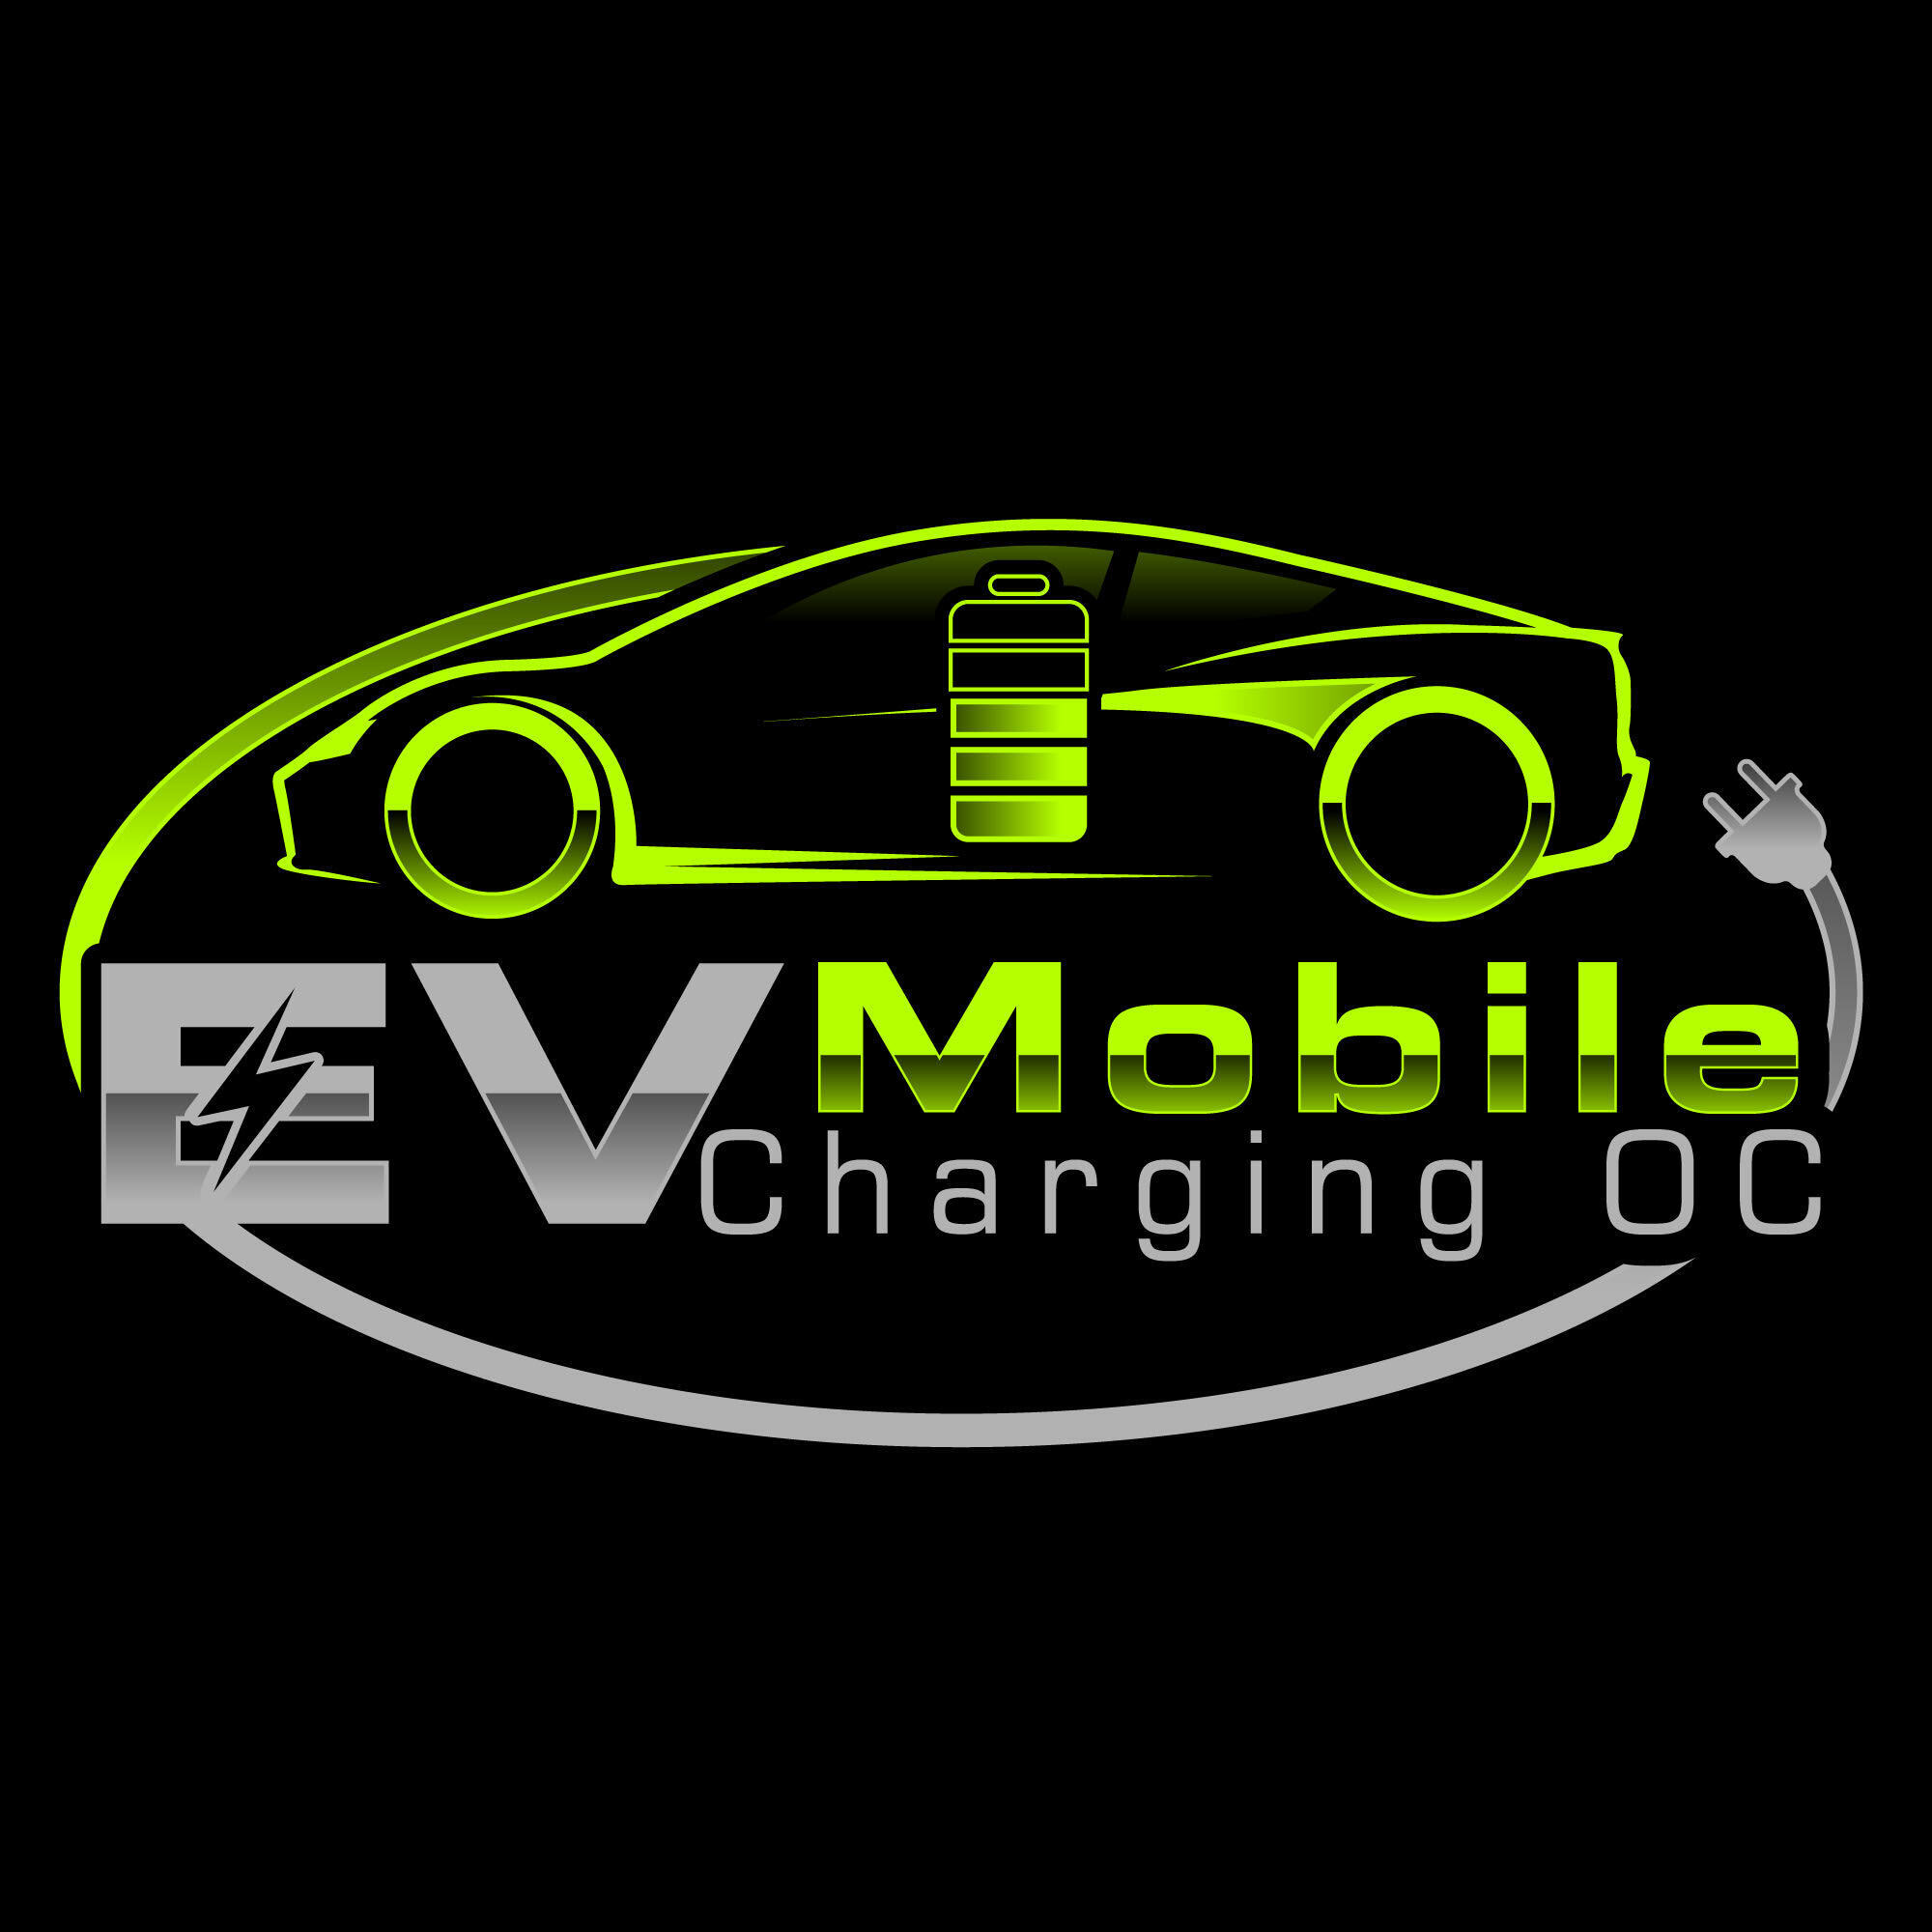 EV Mobile Charging OC